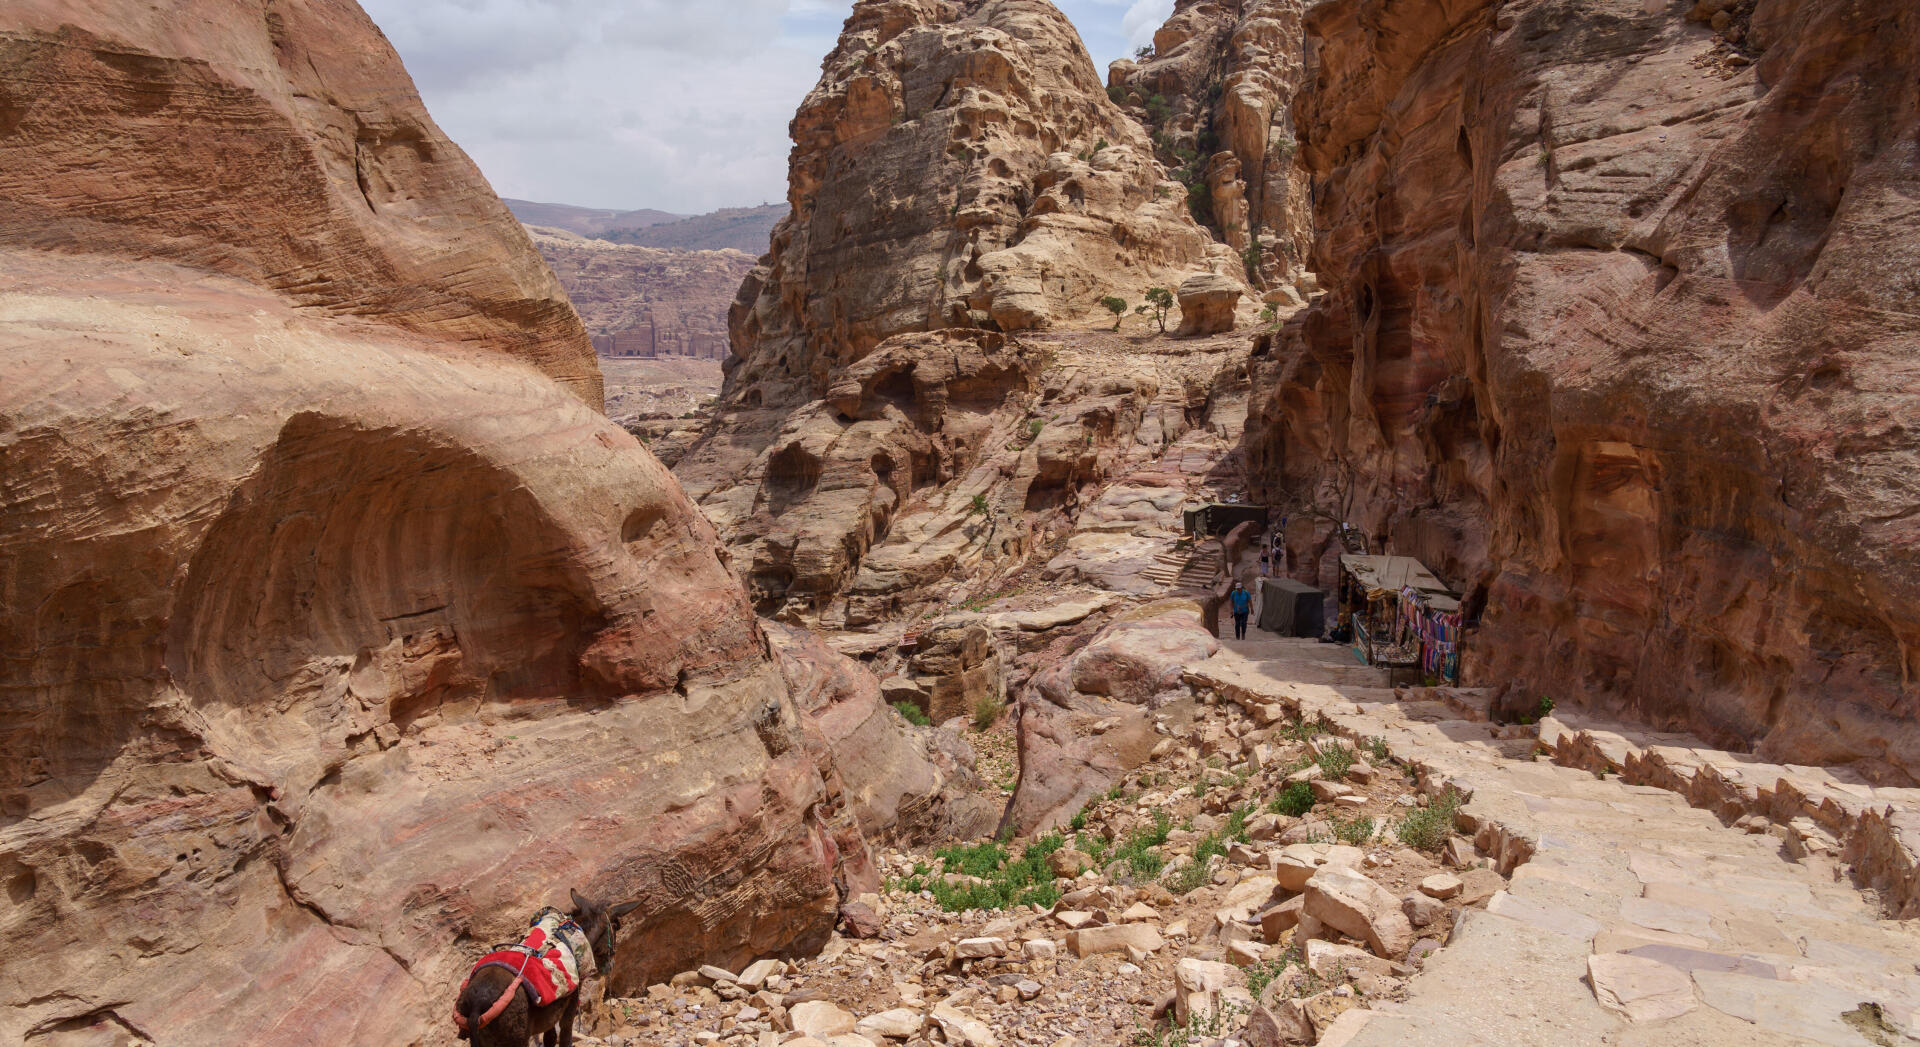 Trekking in Jordan: our tips for adventurers